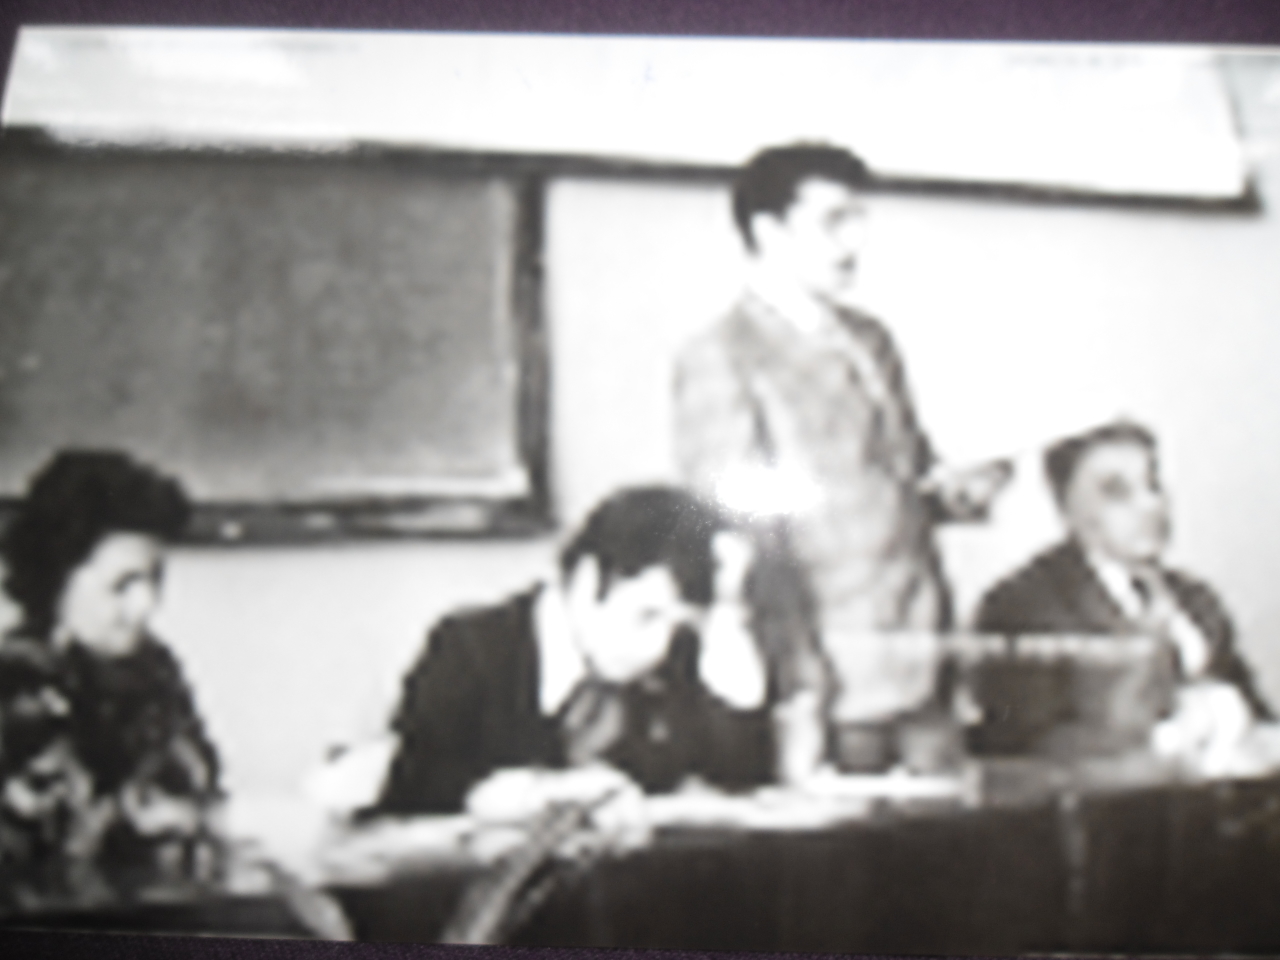 Հրանտ Գևորգի Բատիկյանը  ( Կենսաբան-գենետիկ, ՀԽՍՀ գիտության վաստակավոր գործիչ, կենսաբանական գիտությունների դոկտոր, պրոֆեսոր) գիտաժողովի ժամանակ